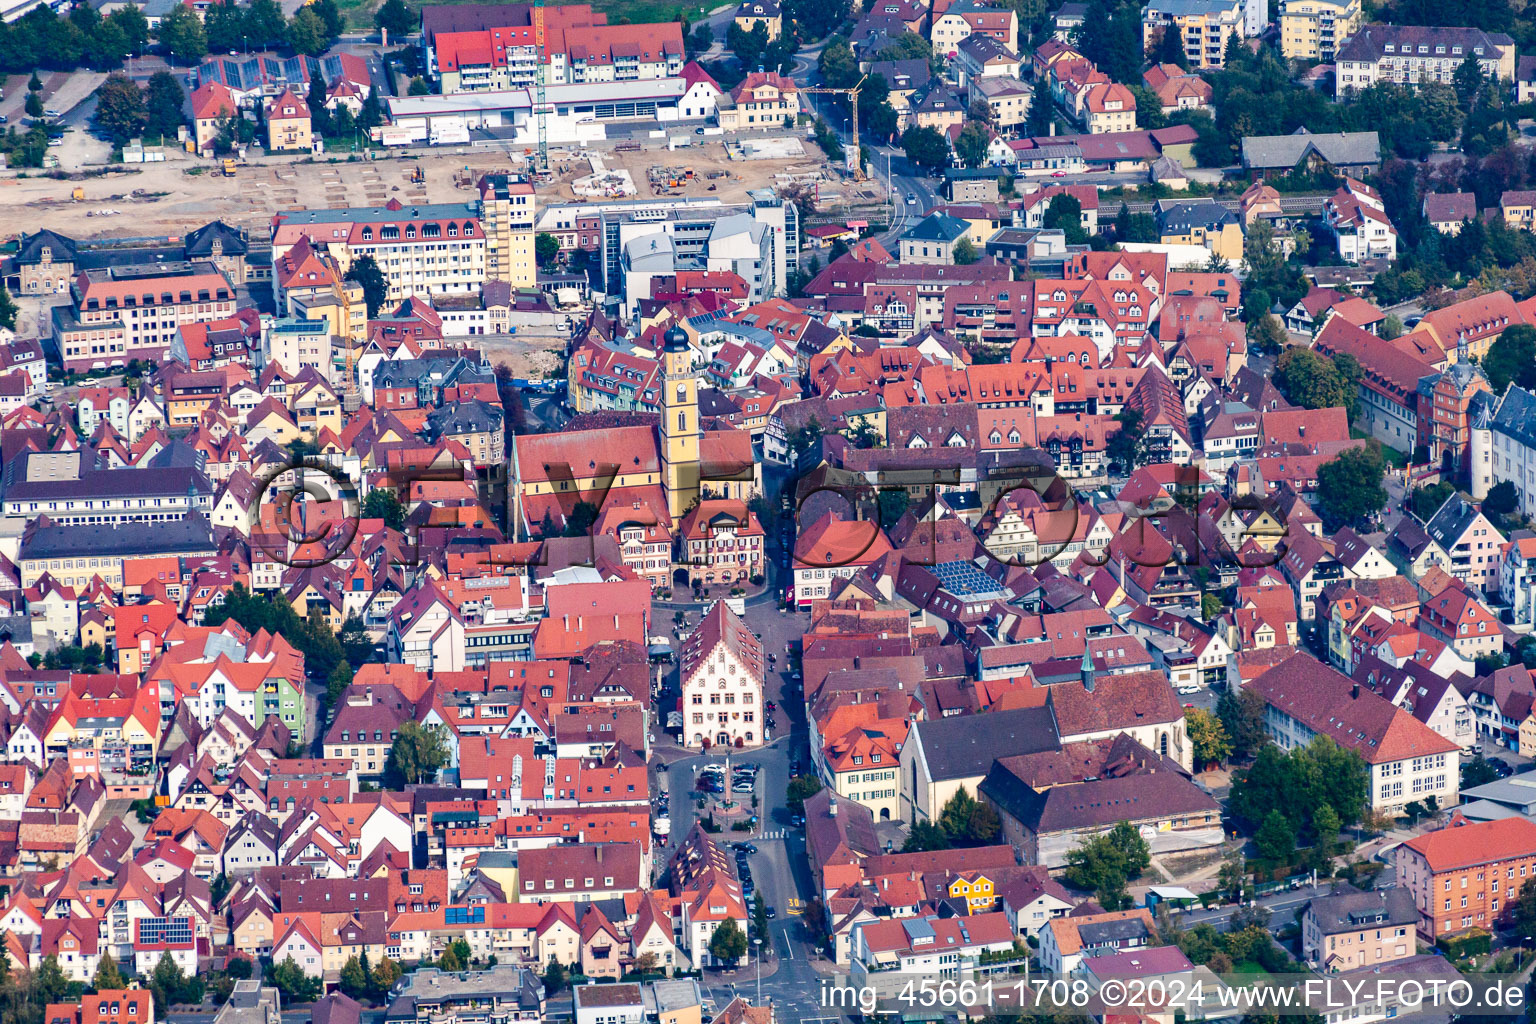 Vue aérienne de Place du marché dans la vieille ville à Bad Mergentheim dans le département Bade-Wurtemberg, Allemagne